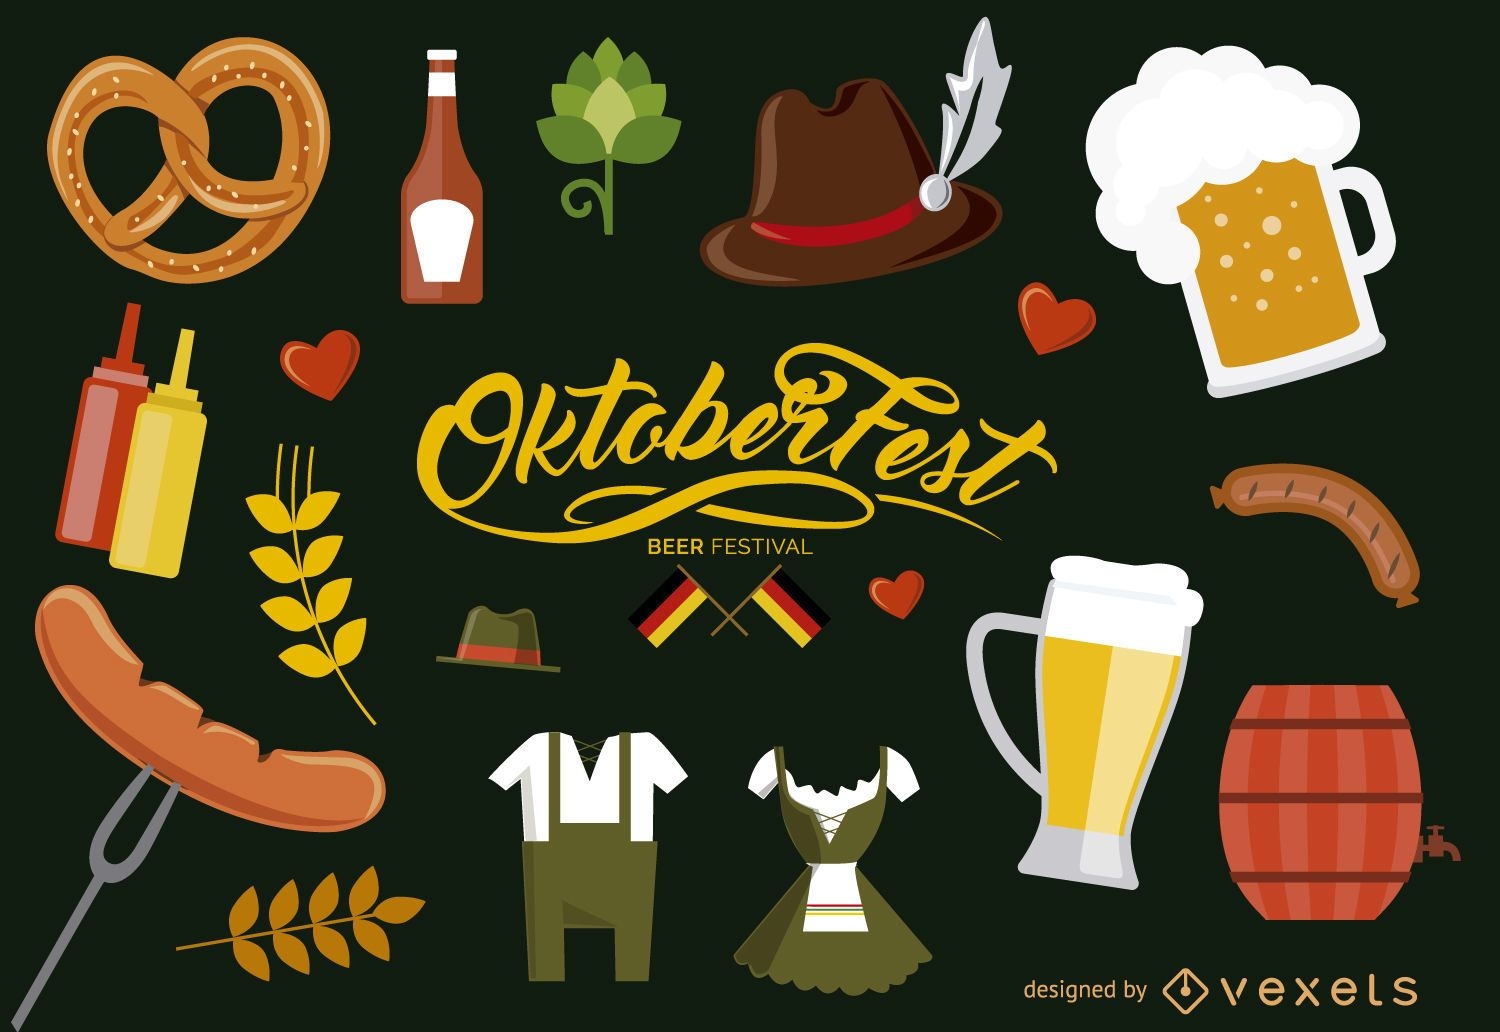 Oktoberfest Germany elements set